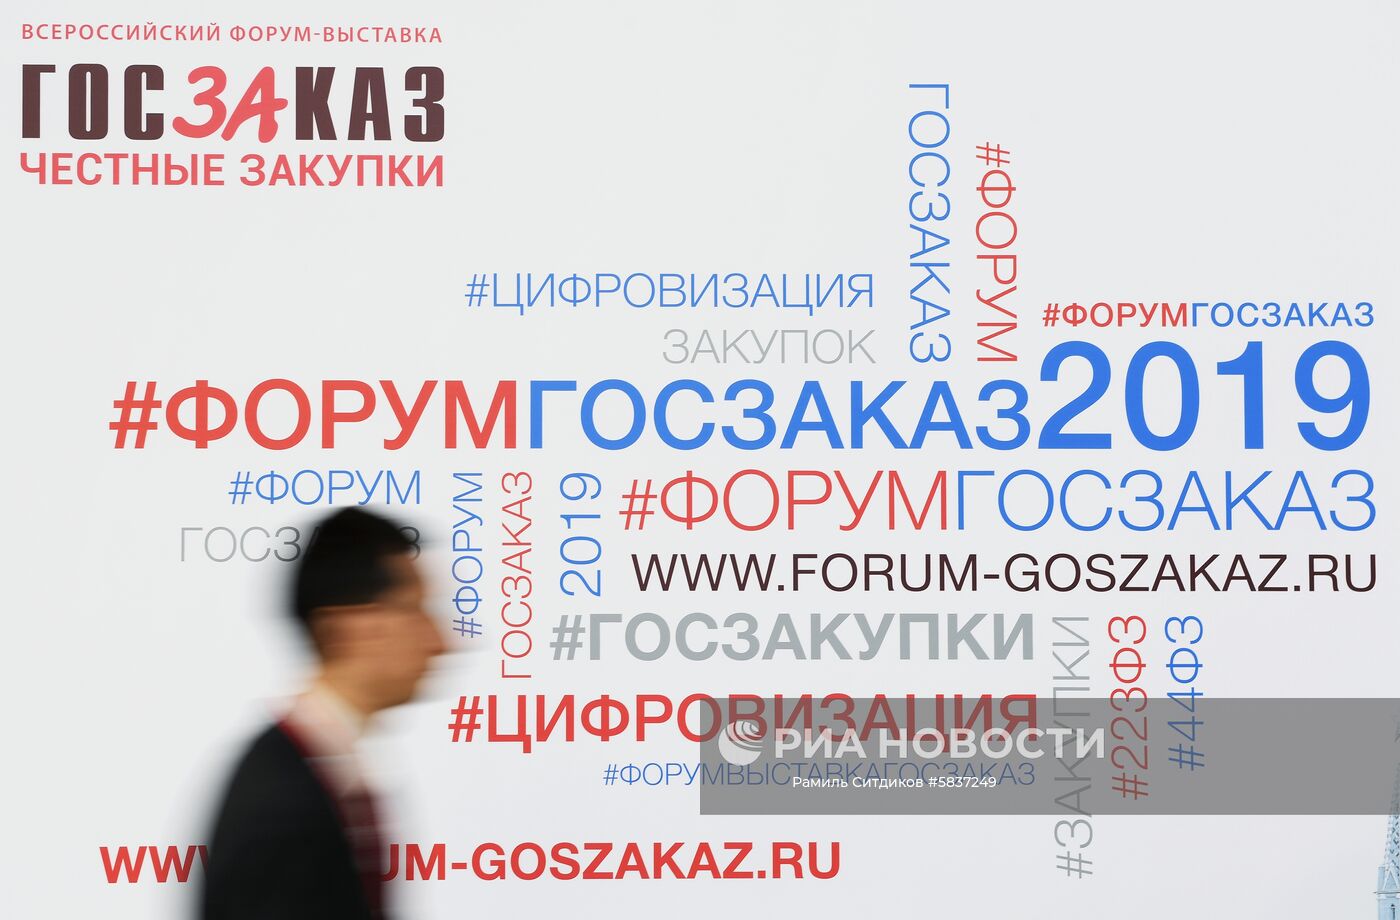 XV юбилейный Всероссийский форум-выставка "Госзаказ"